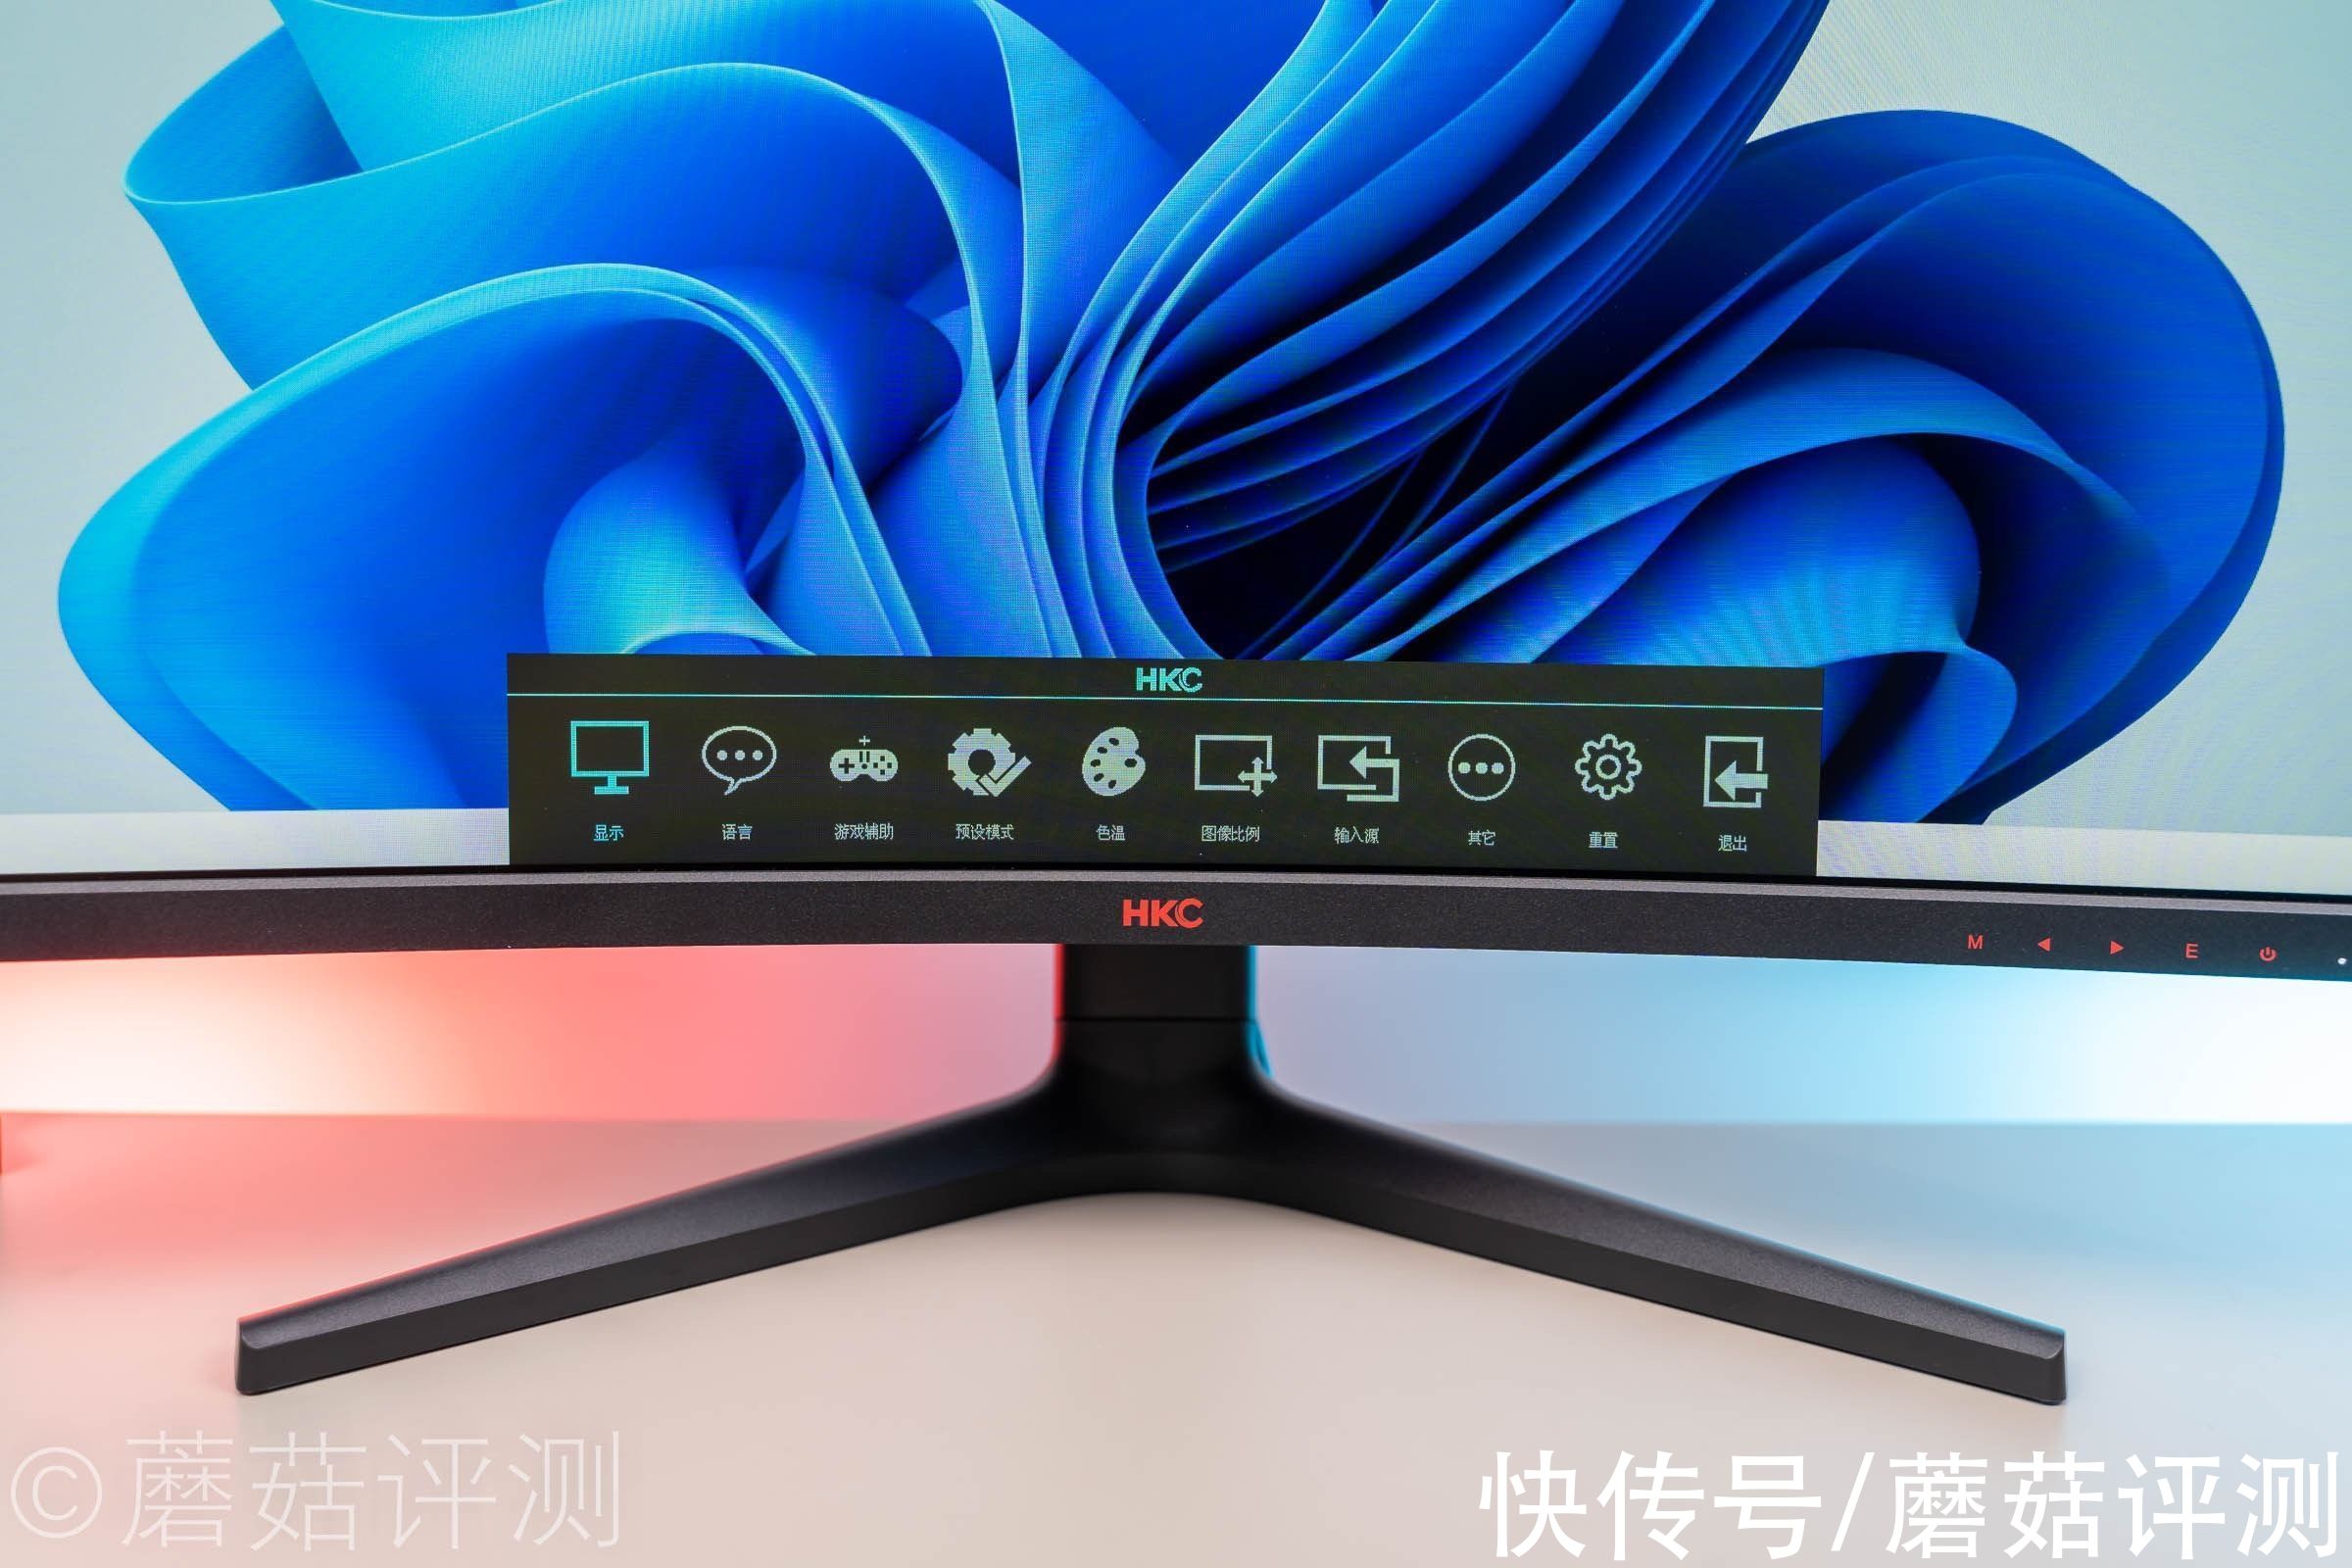 显示器|视觉震撼，色彩丰富，响应快、HKC电竞曲面显示器VG32C2Q 评测